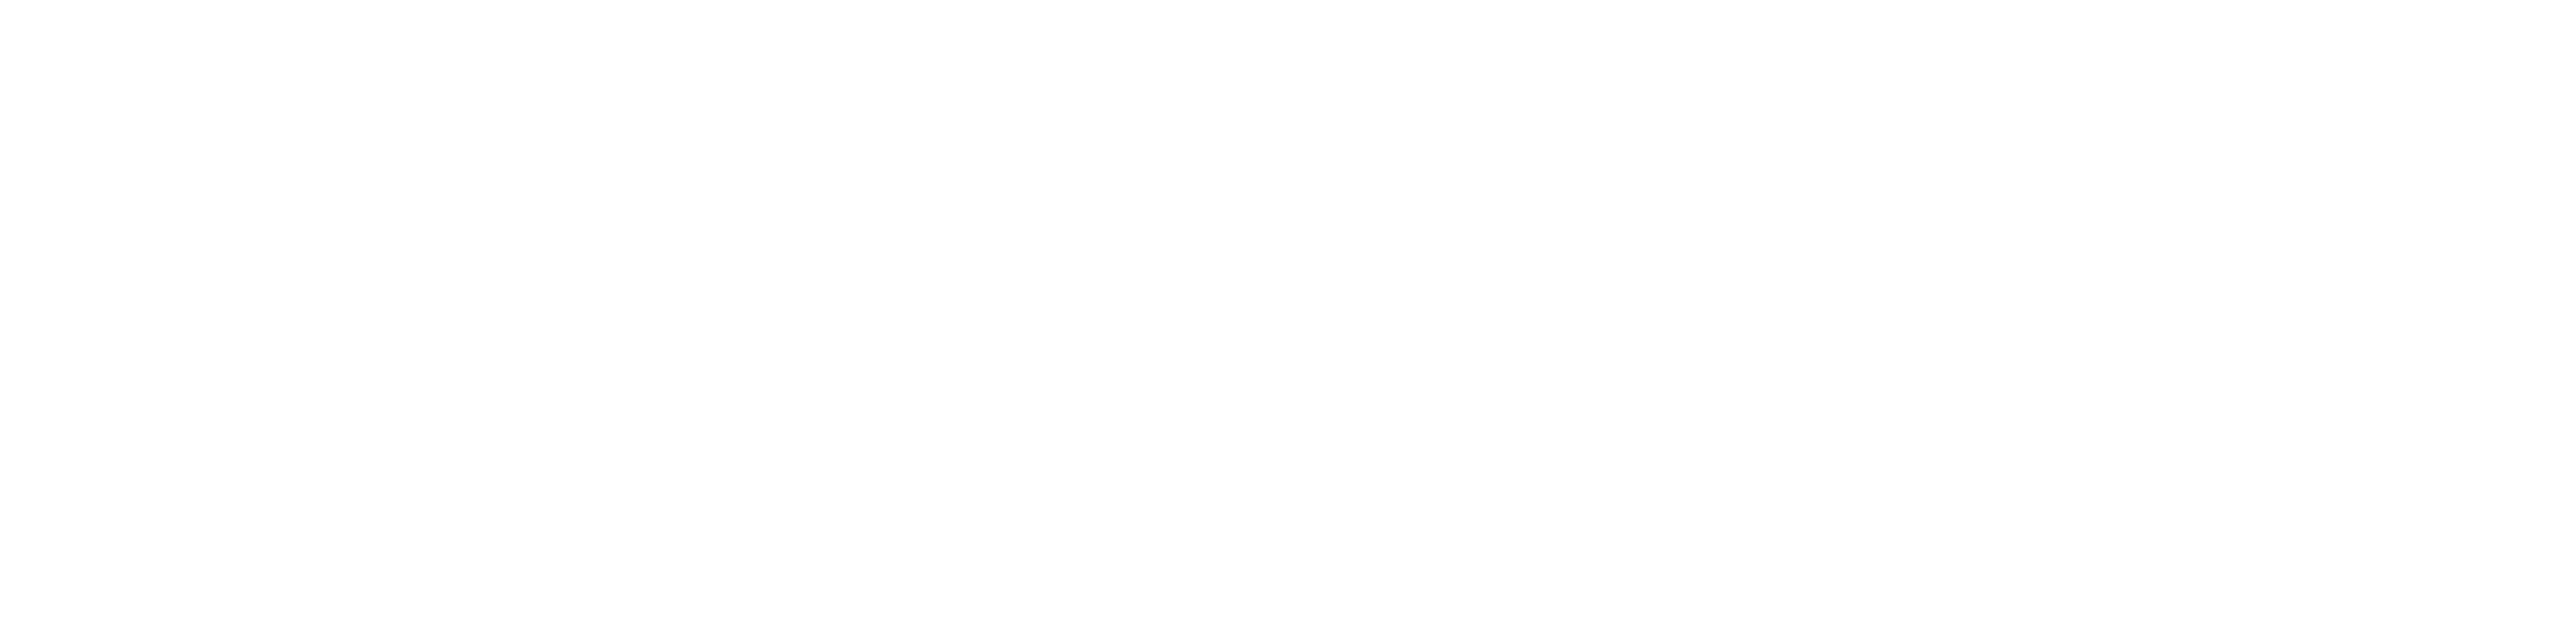 Anytime_Fitness_logo_white